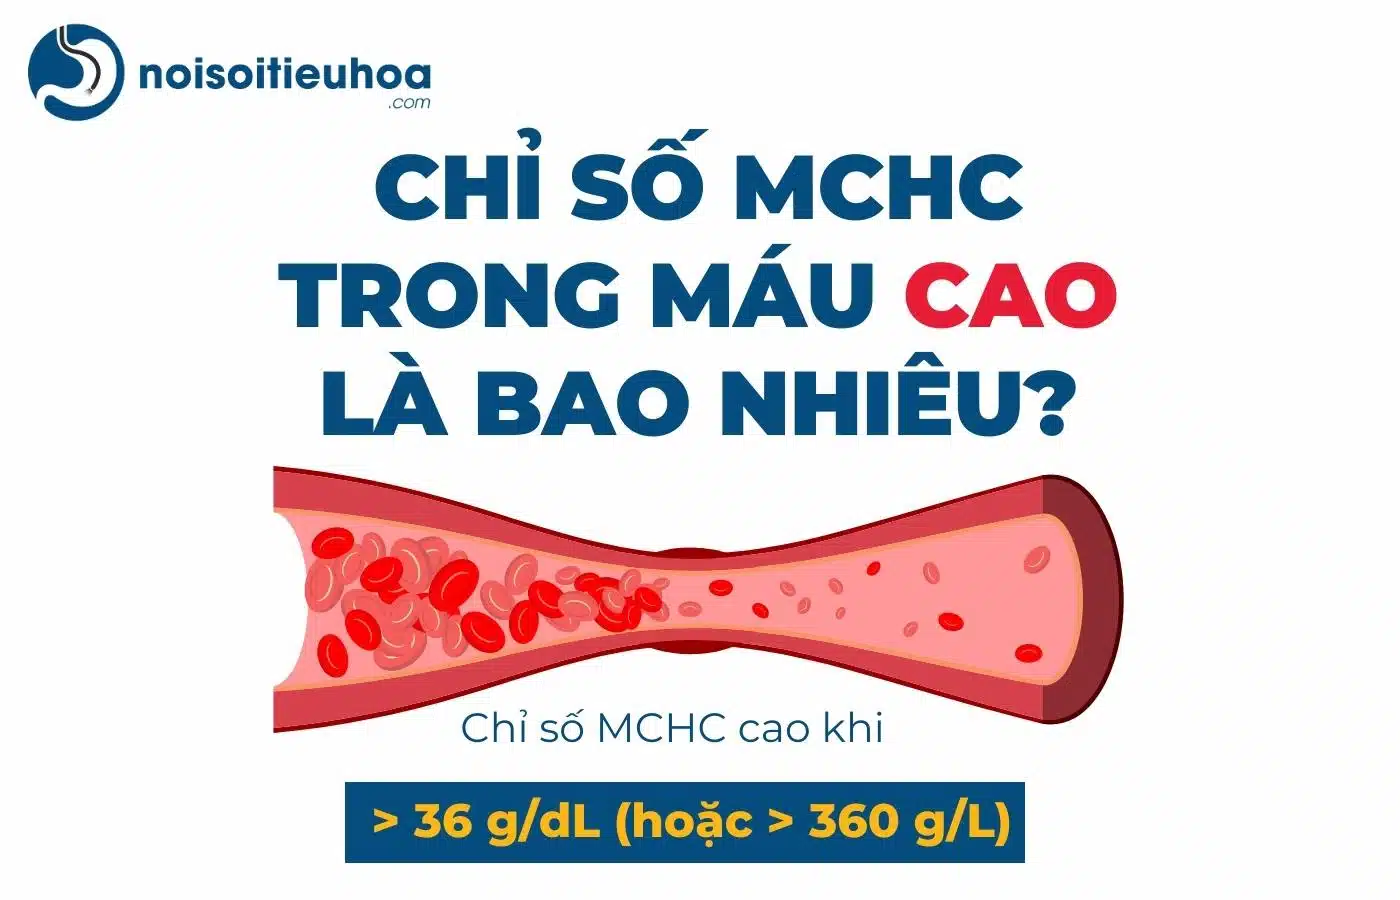 Chỉ số MCHC trong xét nghiệm công thức máu cao là bao nhiêu?